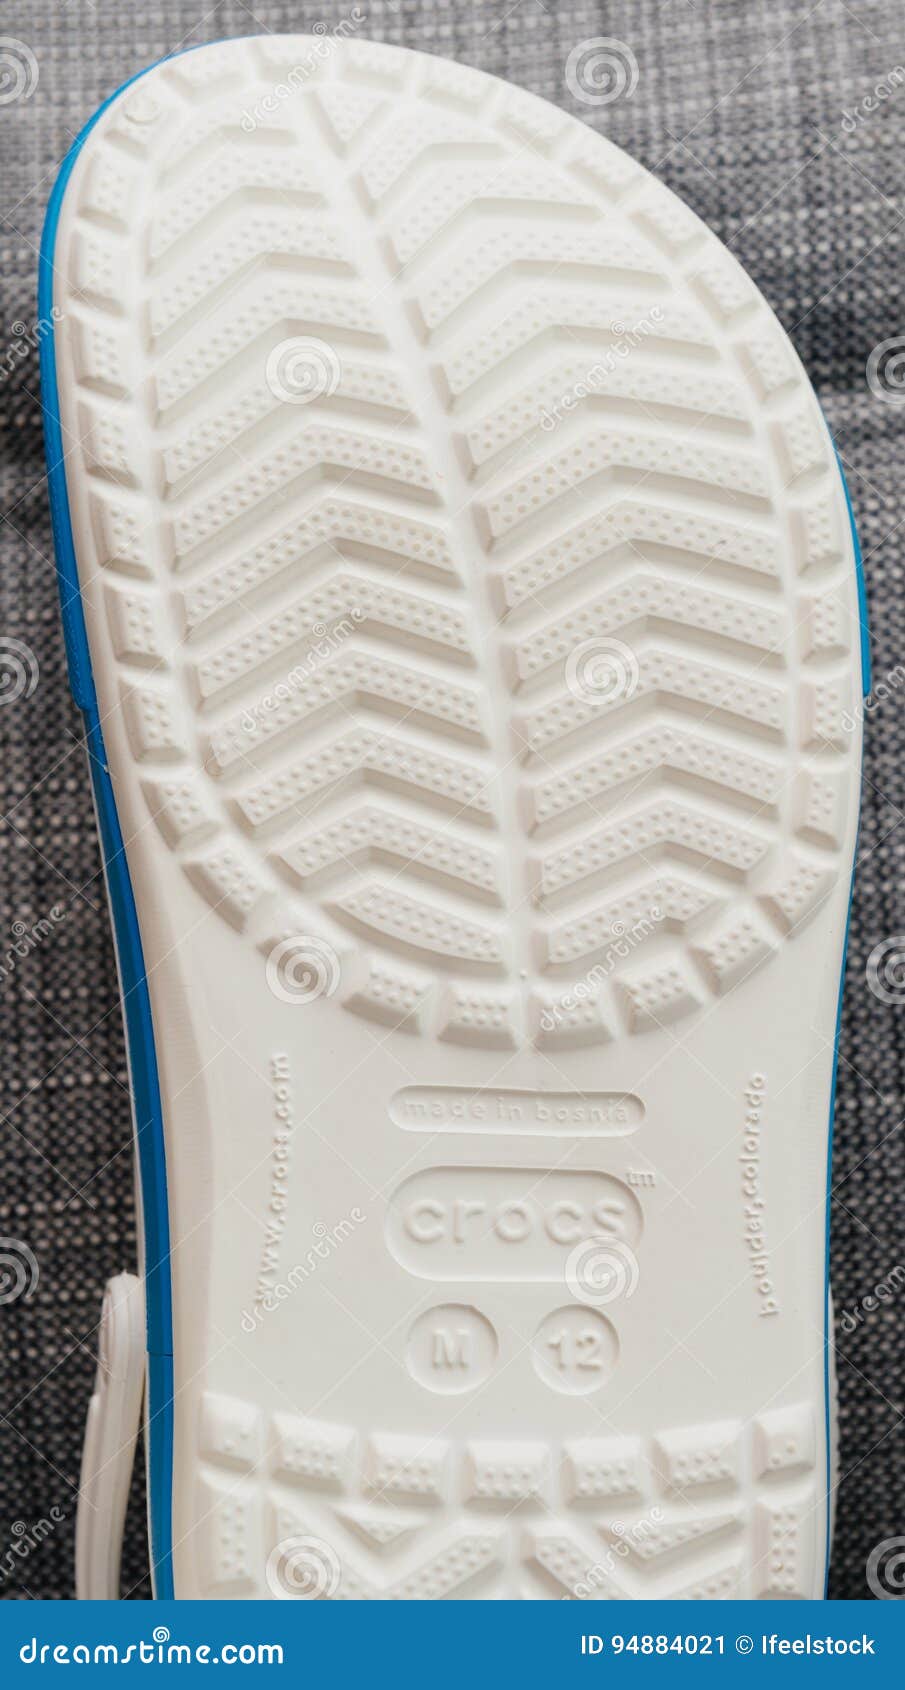 crocs original made in